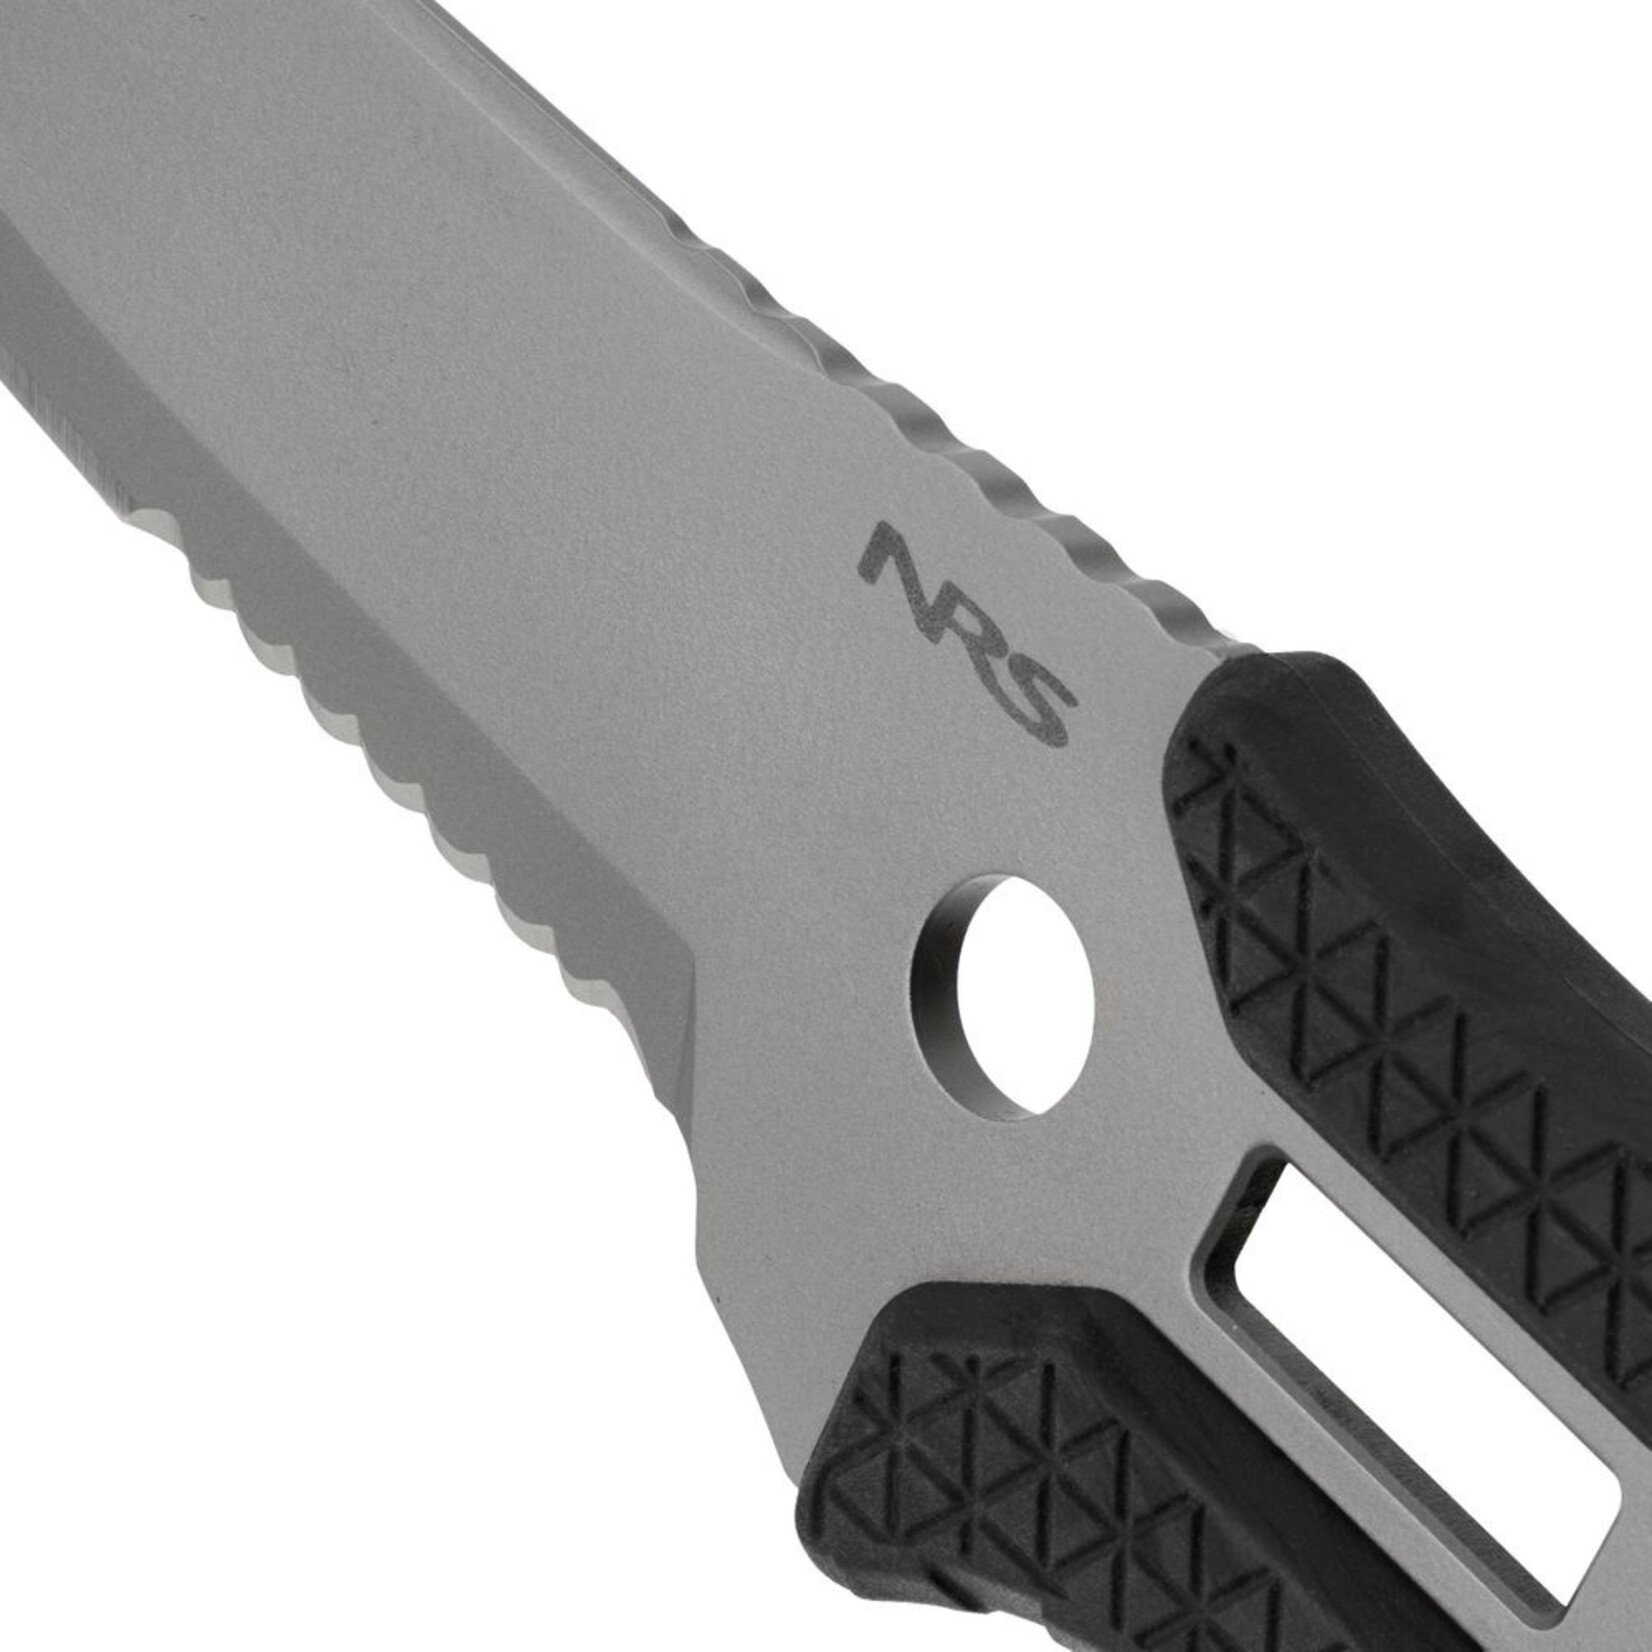 NRS - Titanium Co-Pilot Knife